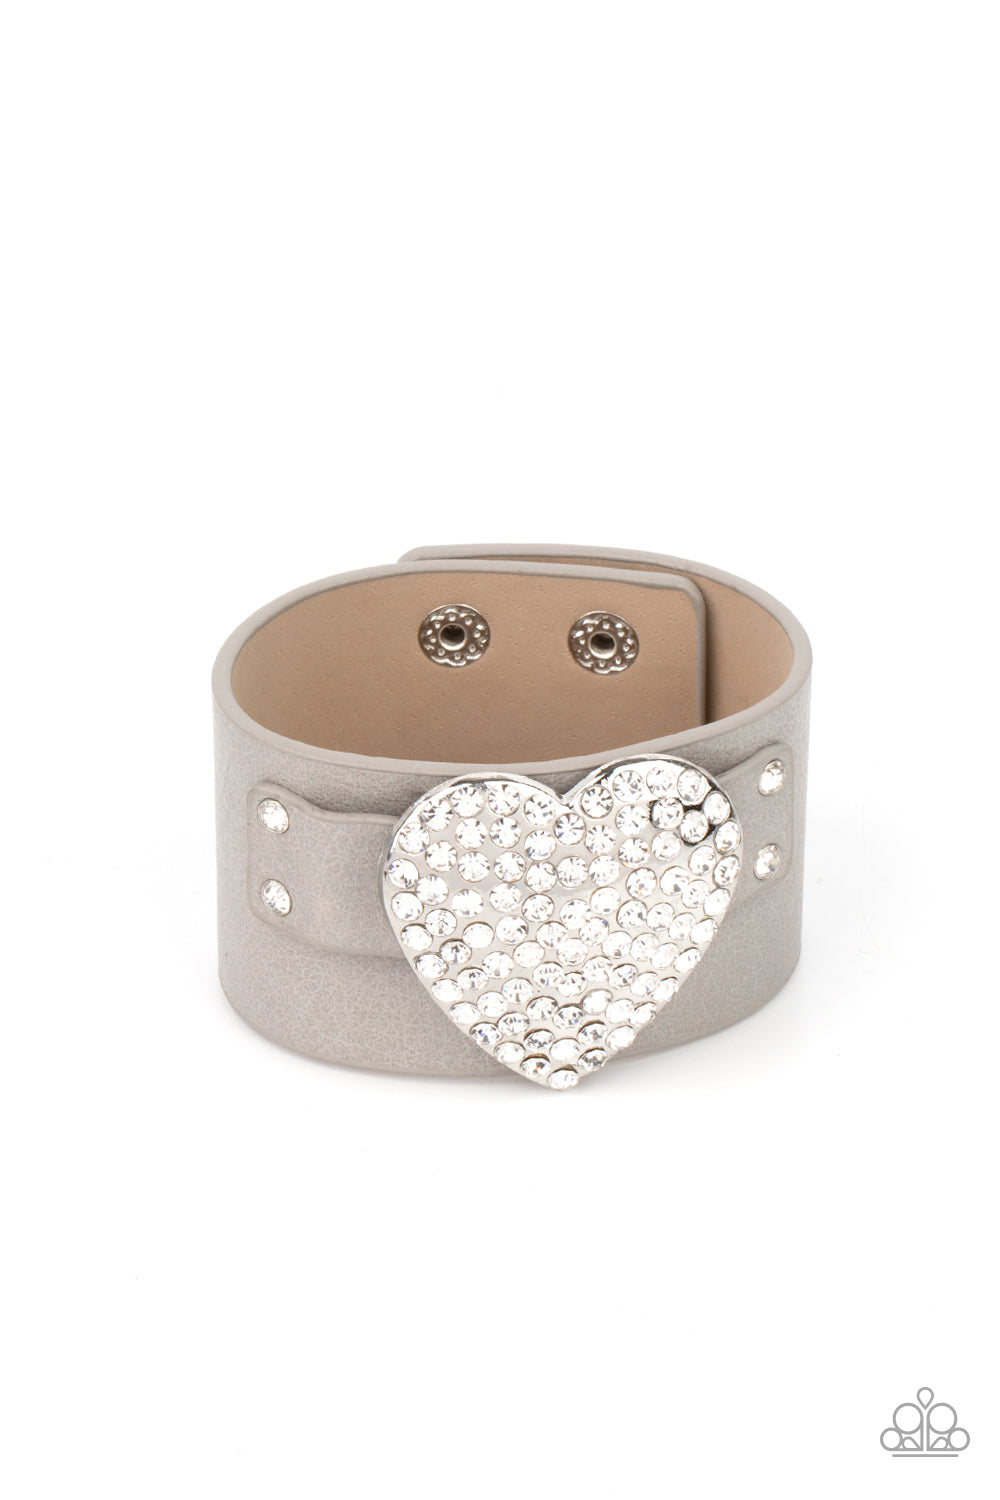 oak-sisters-jewelry-flauntable-flirt-silver-bracelet-paparazzi-accessories-by-lisa